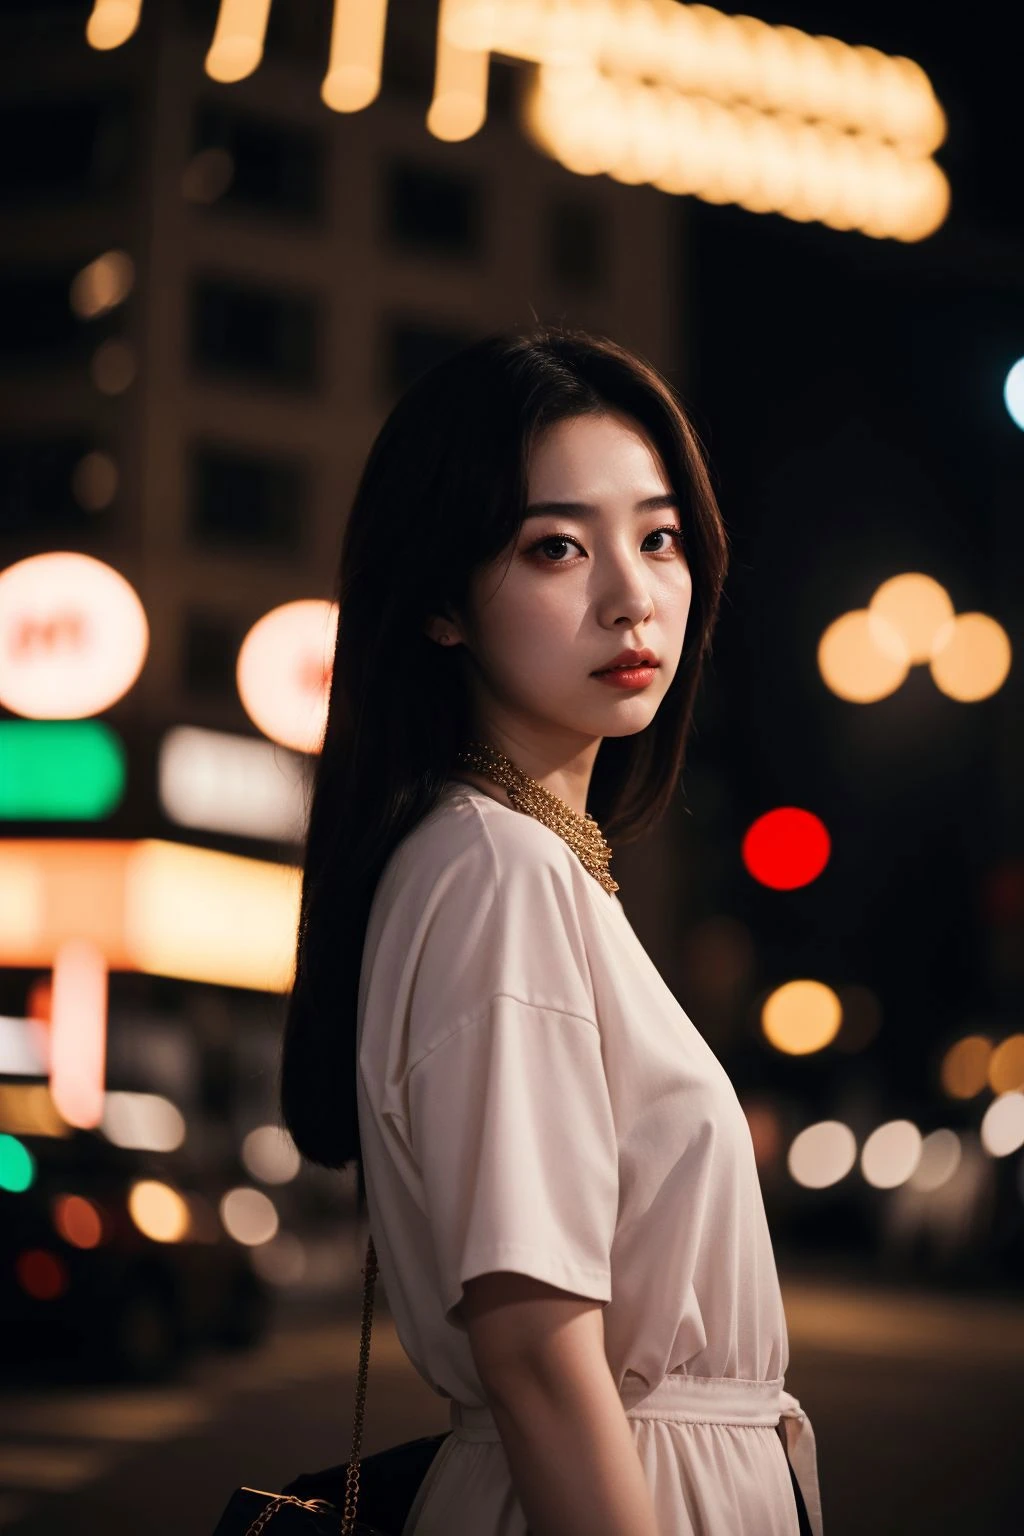 (Filmische Ästhetik:1.4) Foto von einem schönen koreanischen Mode-Modell Bokeh Stadt Nacht